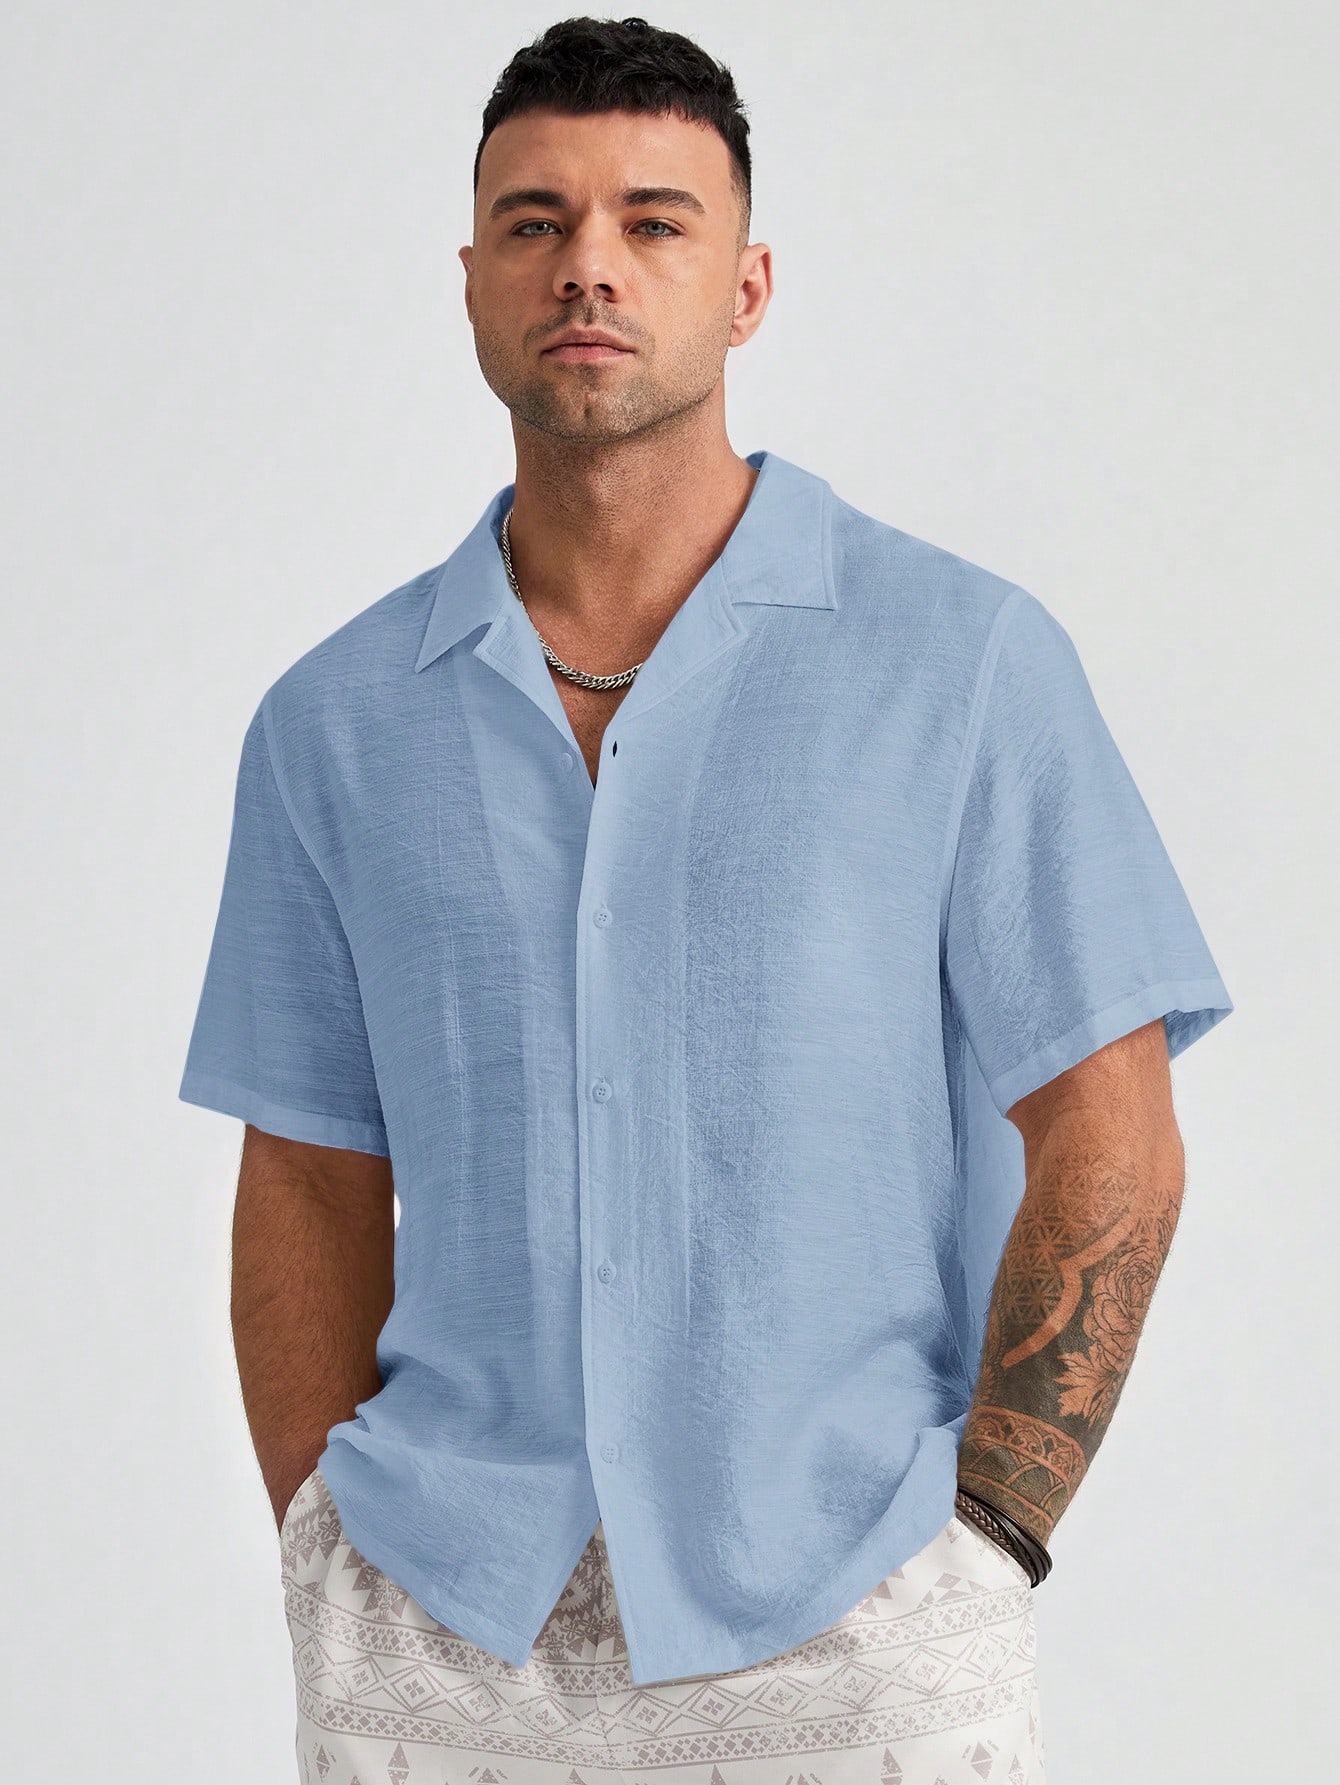 Manfinity Homme Мужская однотонная тканая рубашка больших размеров с коротким рукавом больших размеров, синий